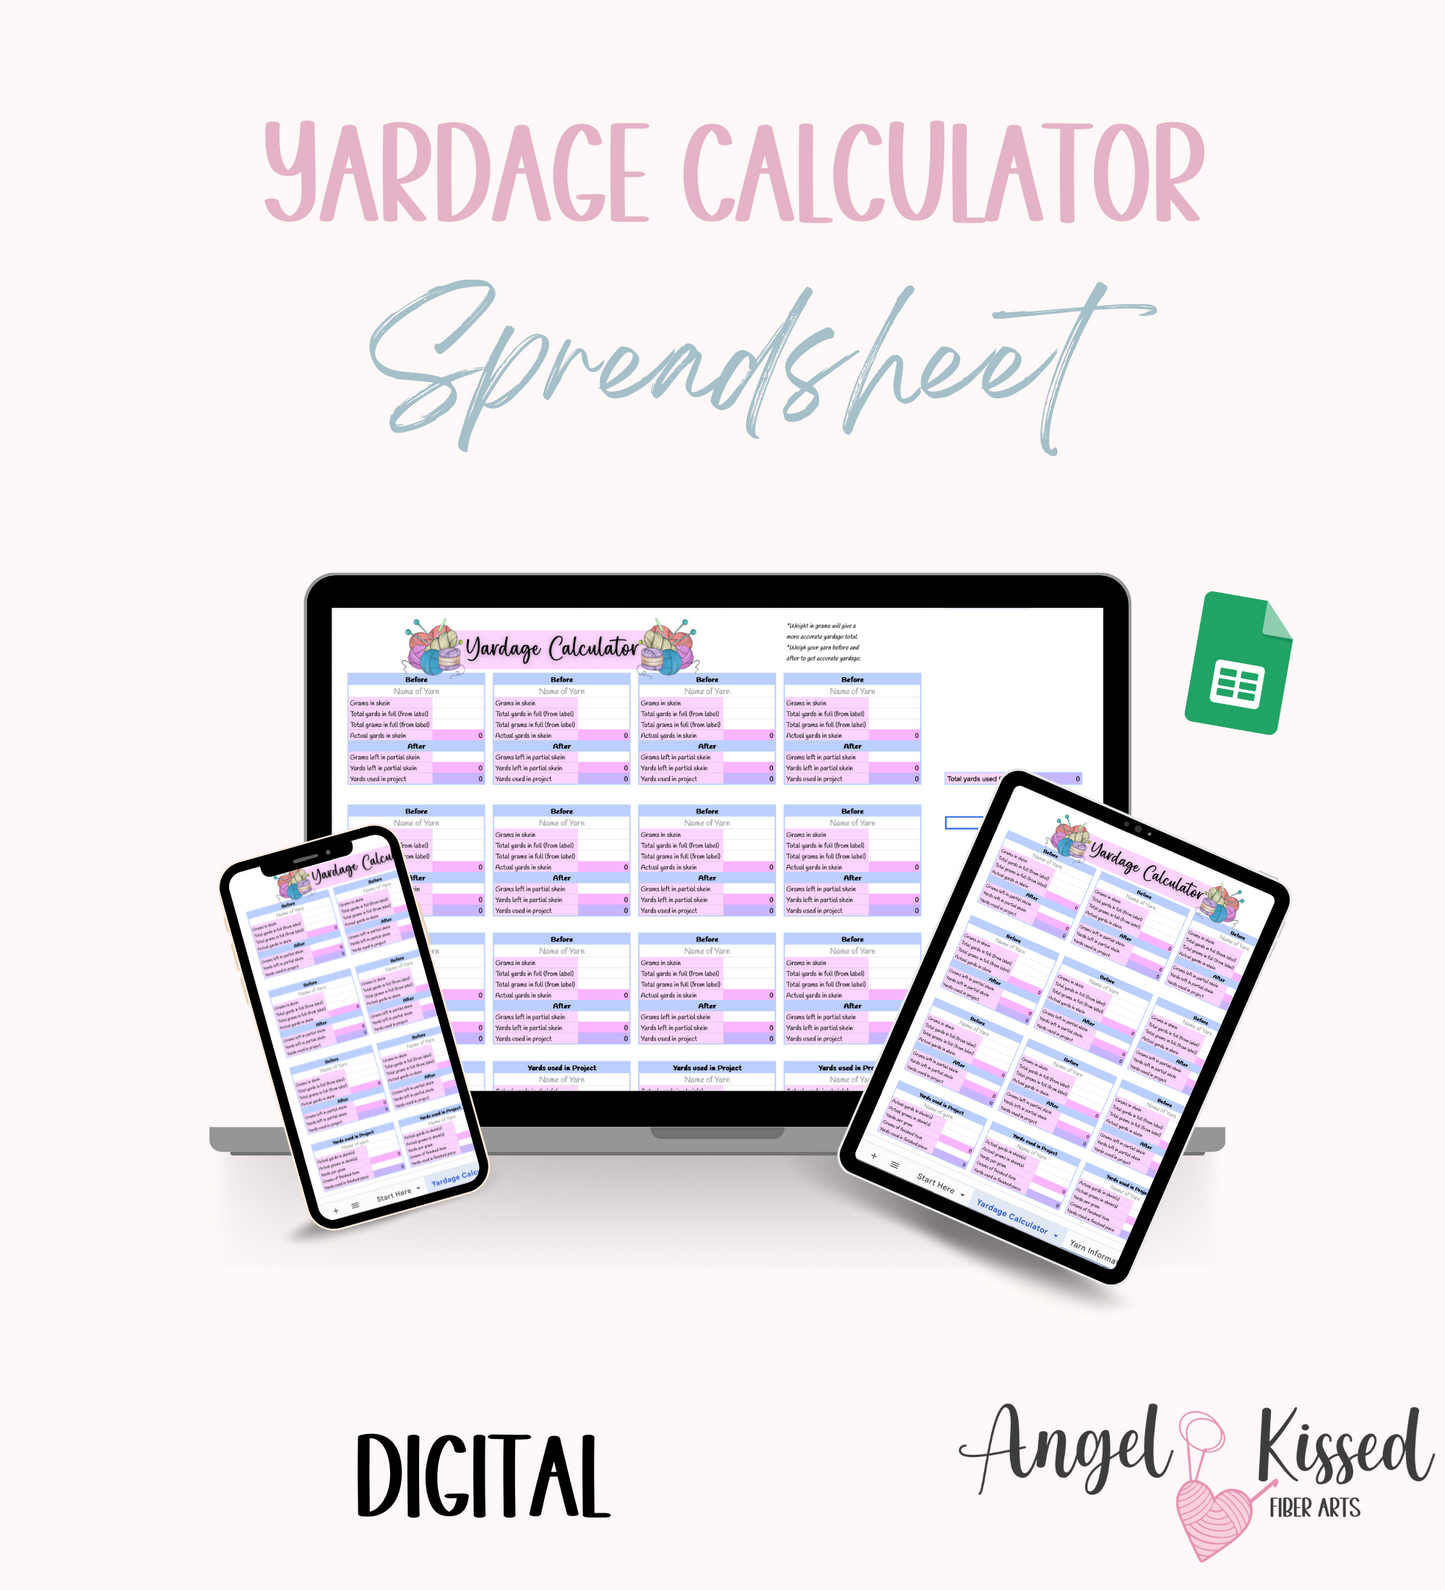 Yardage Calculator spreadsheet